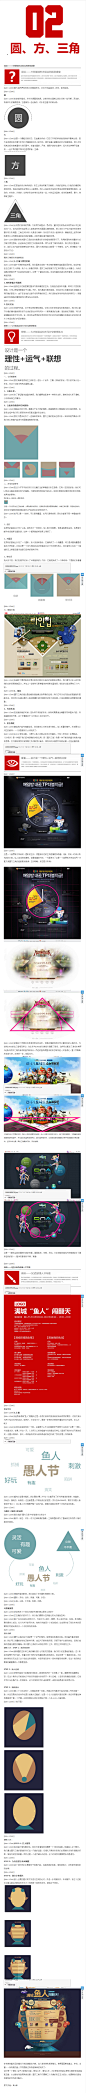 圆方三角在设计中的运用-设计教程,致设计-中国最大的电商设计师交流平台